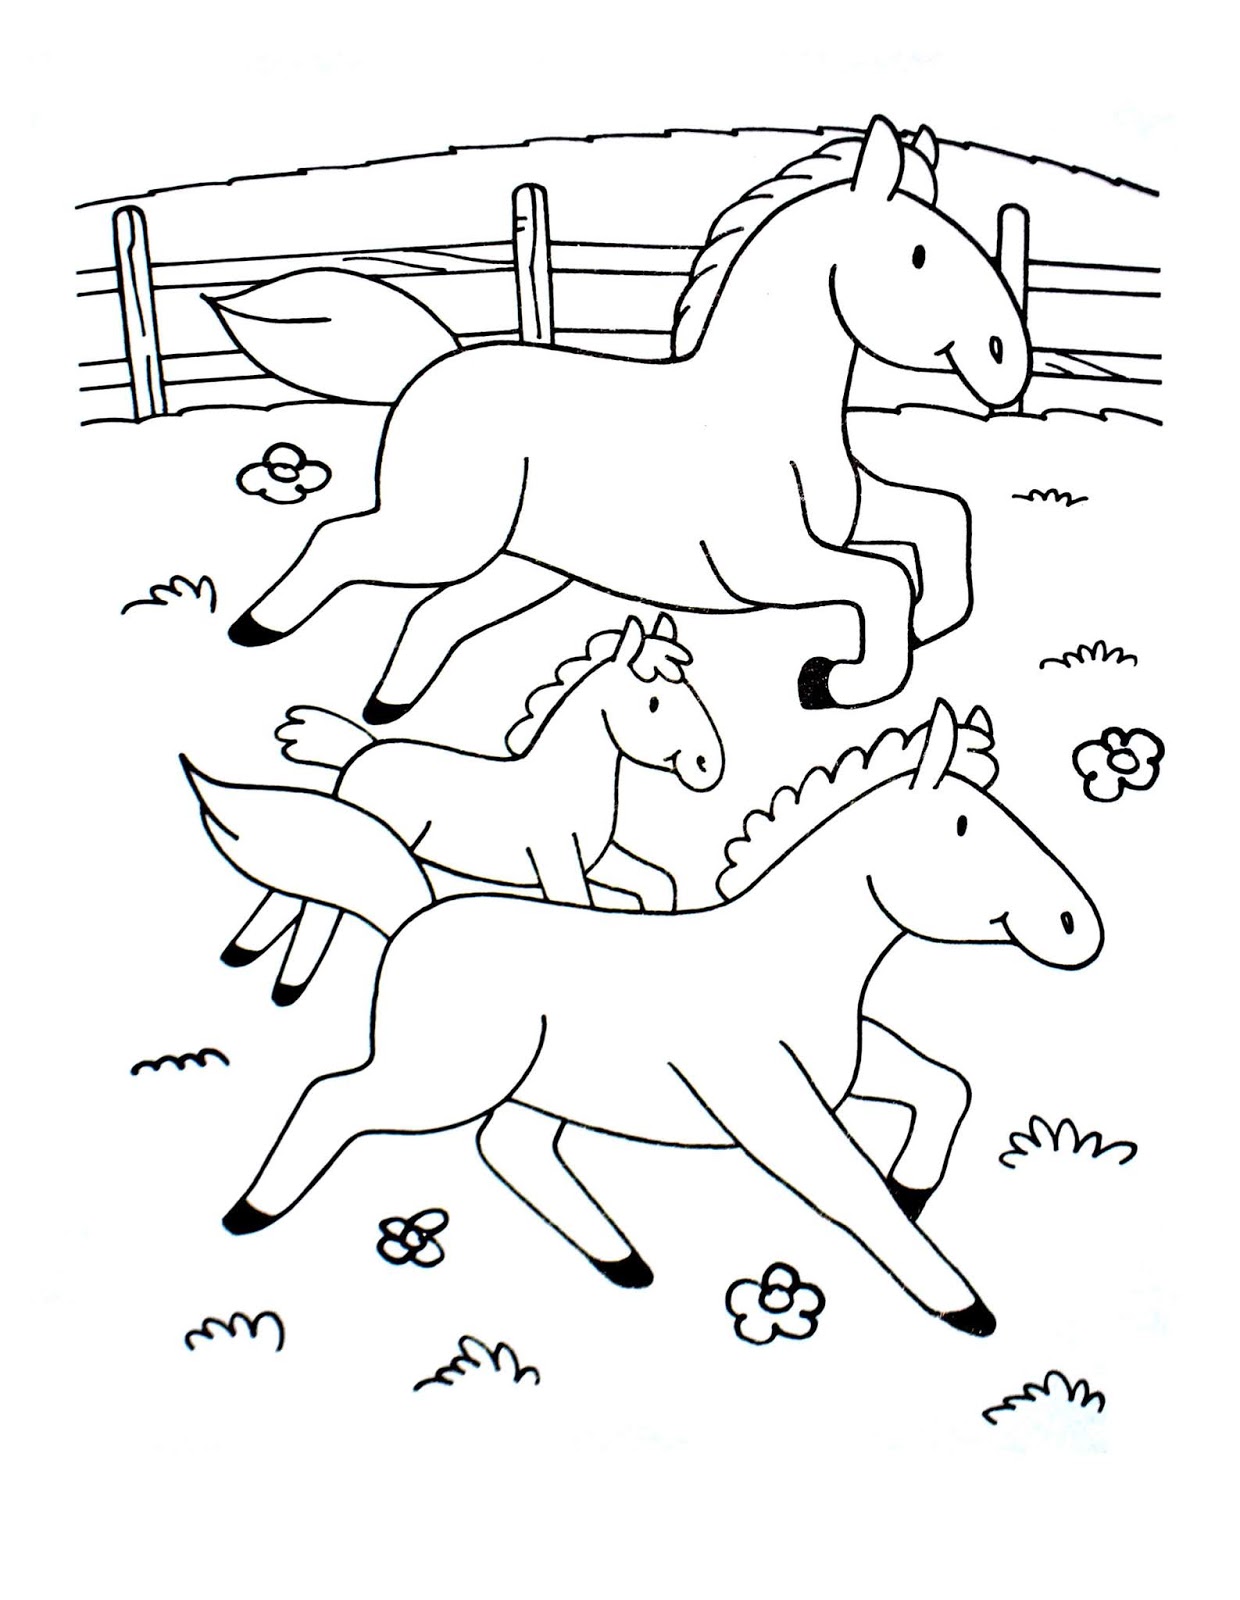 Tổng hợp các bức tranh tô màu con ngựa cho bé